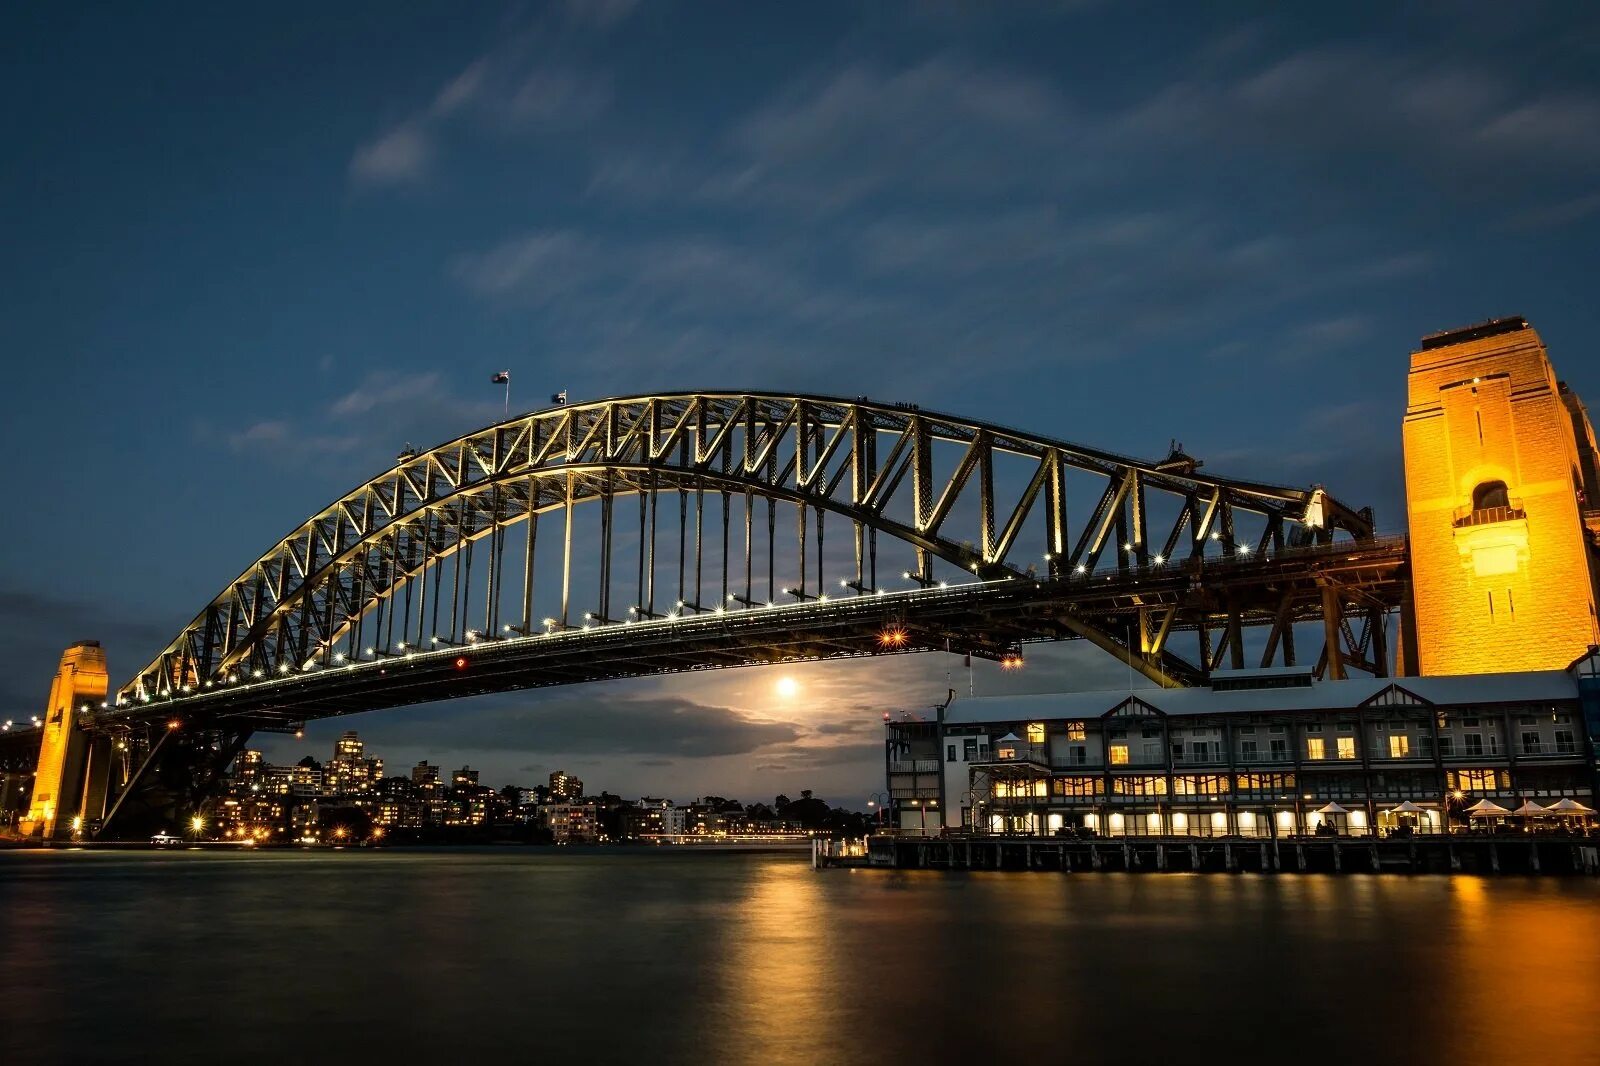 Бридж. Сиднейский Харбор-бридж. Сиднейский мост Харбор-бридж. Мост Харбор бридж в Австралии. Сиднейский Харбор-бридж, Австралия.